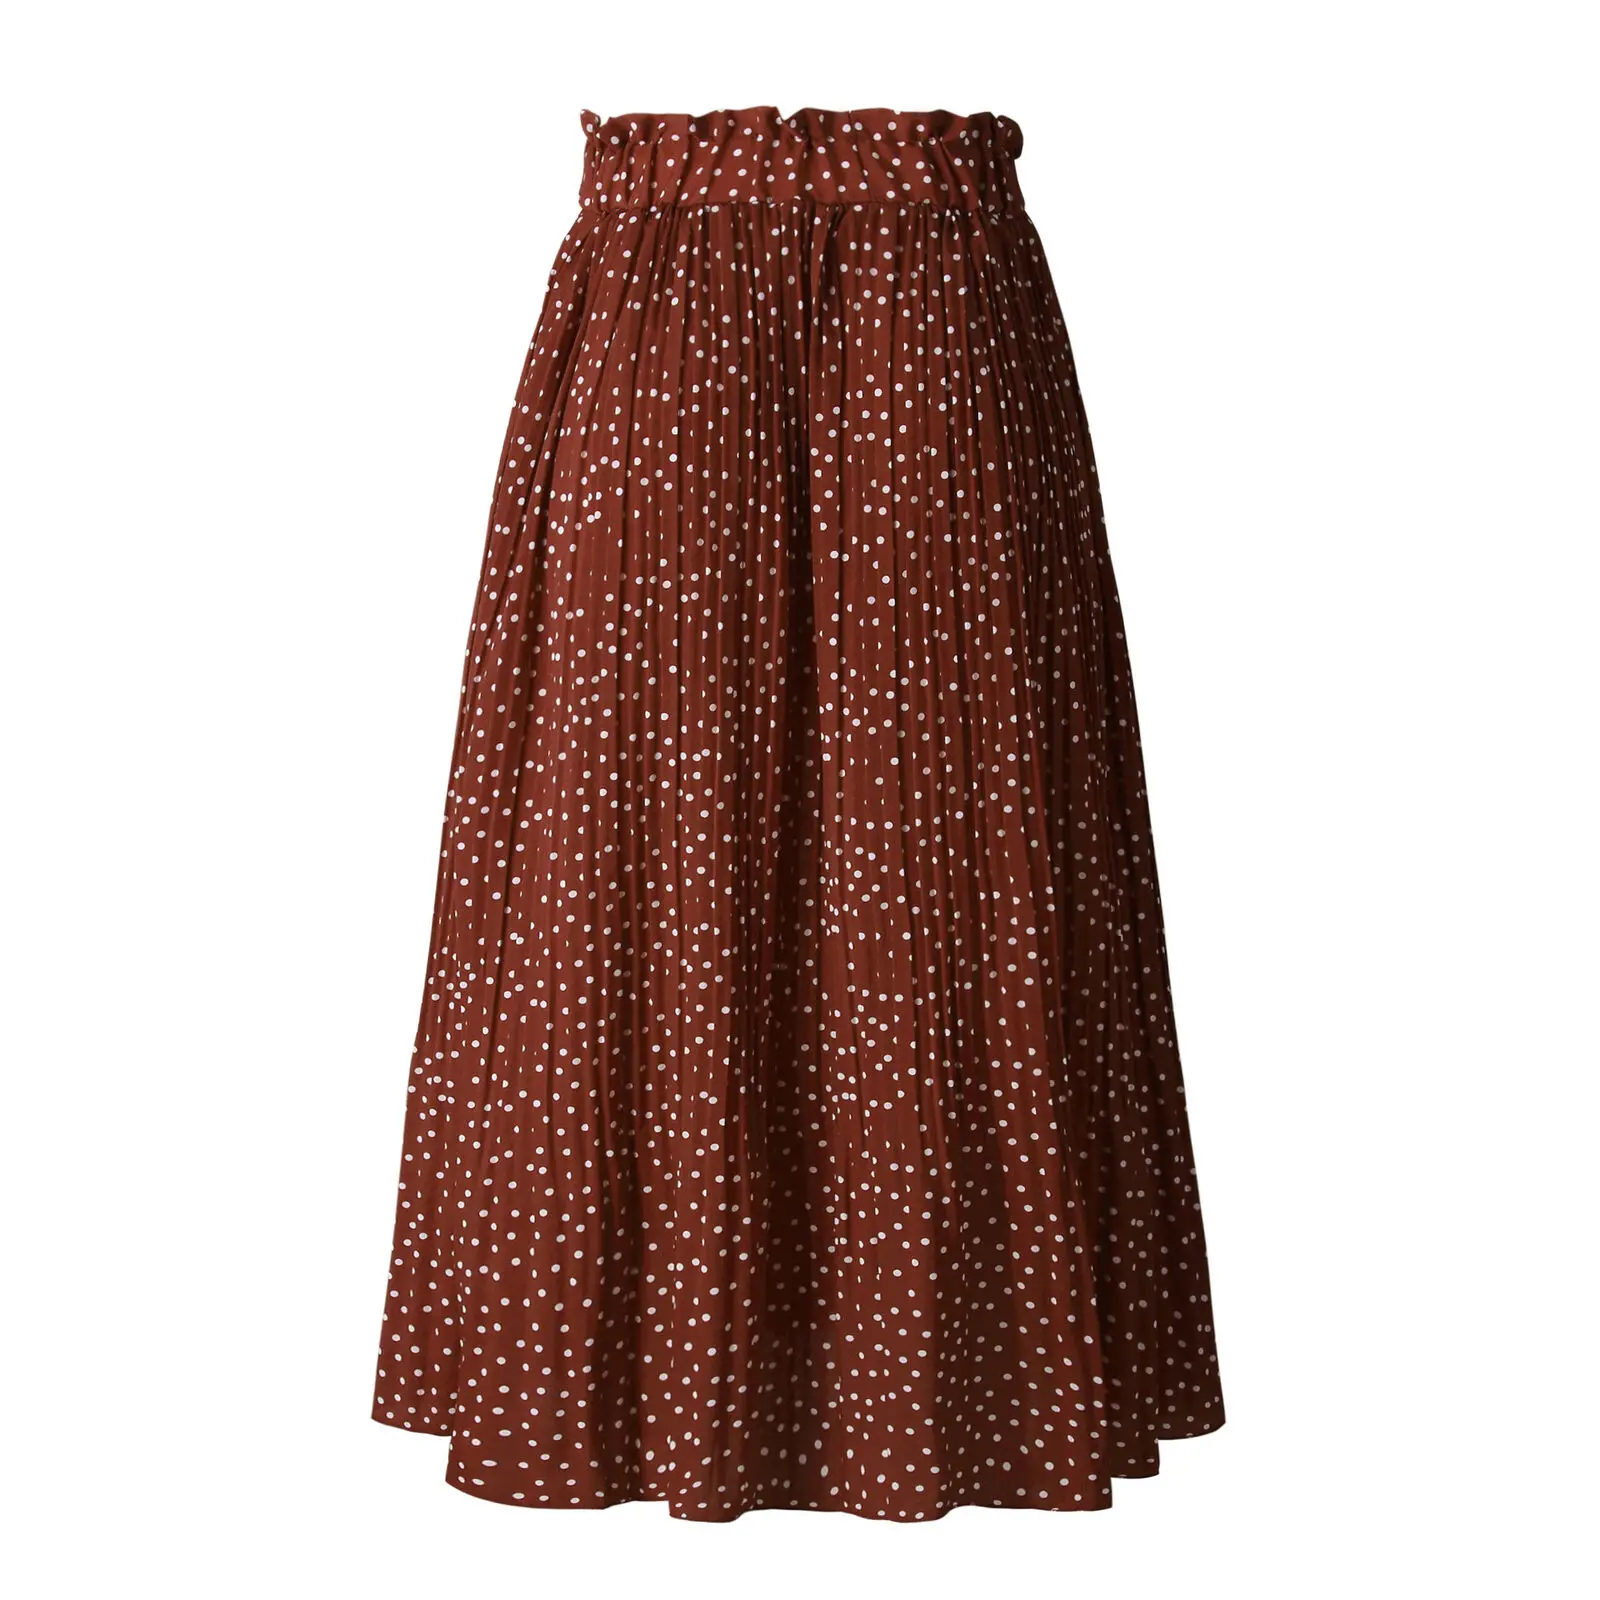 Новейшая длинная юбка из полиэстера Женская юбка миди с высокой талией эластичная ретро Цветочная Пышная юбка в горошек - Цвет: Коричневый